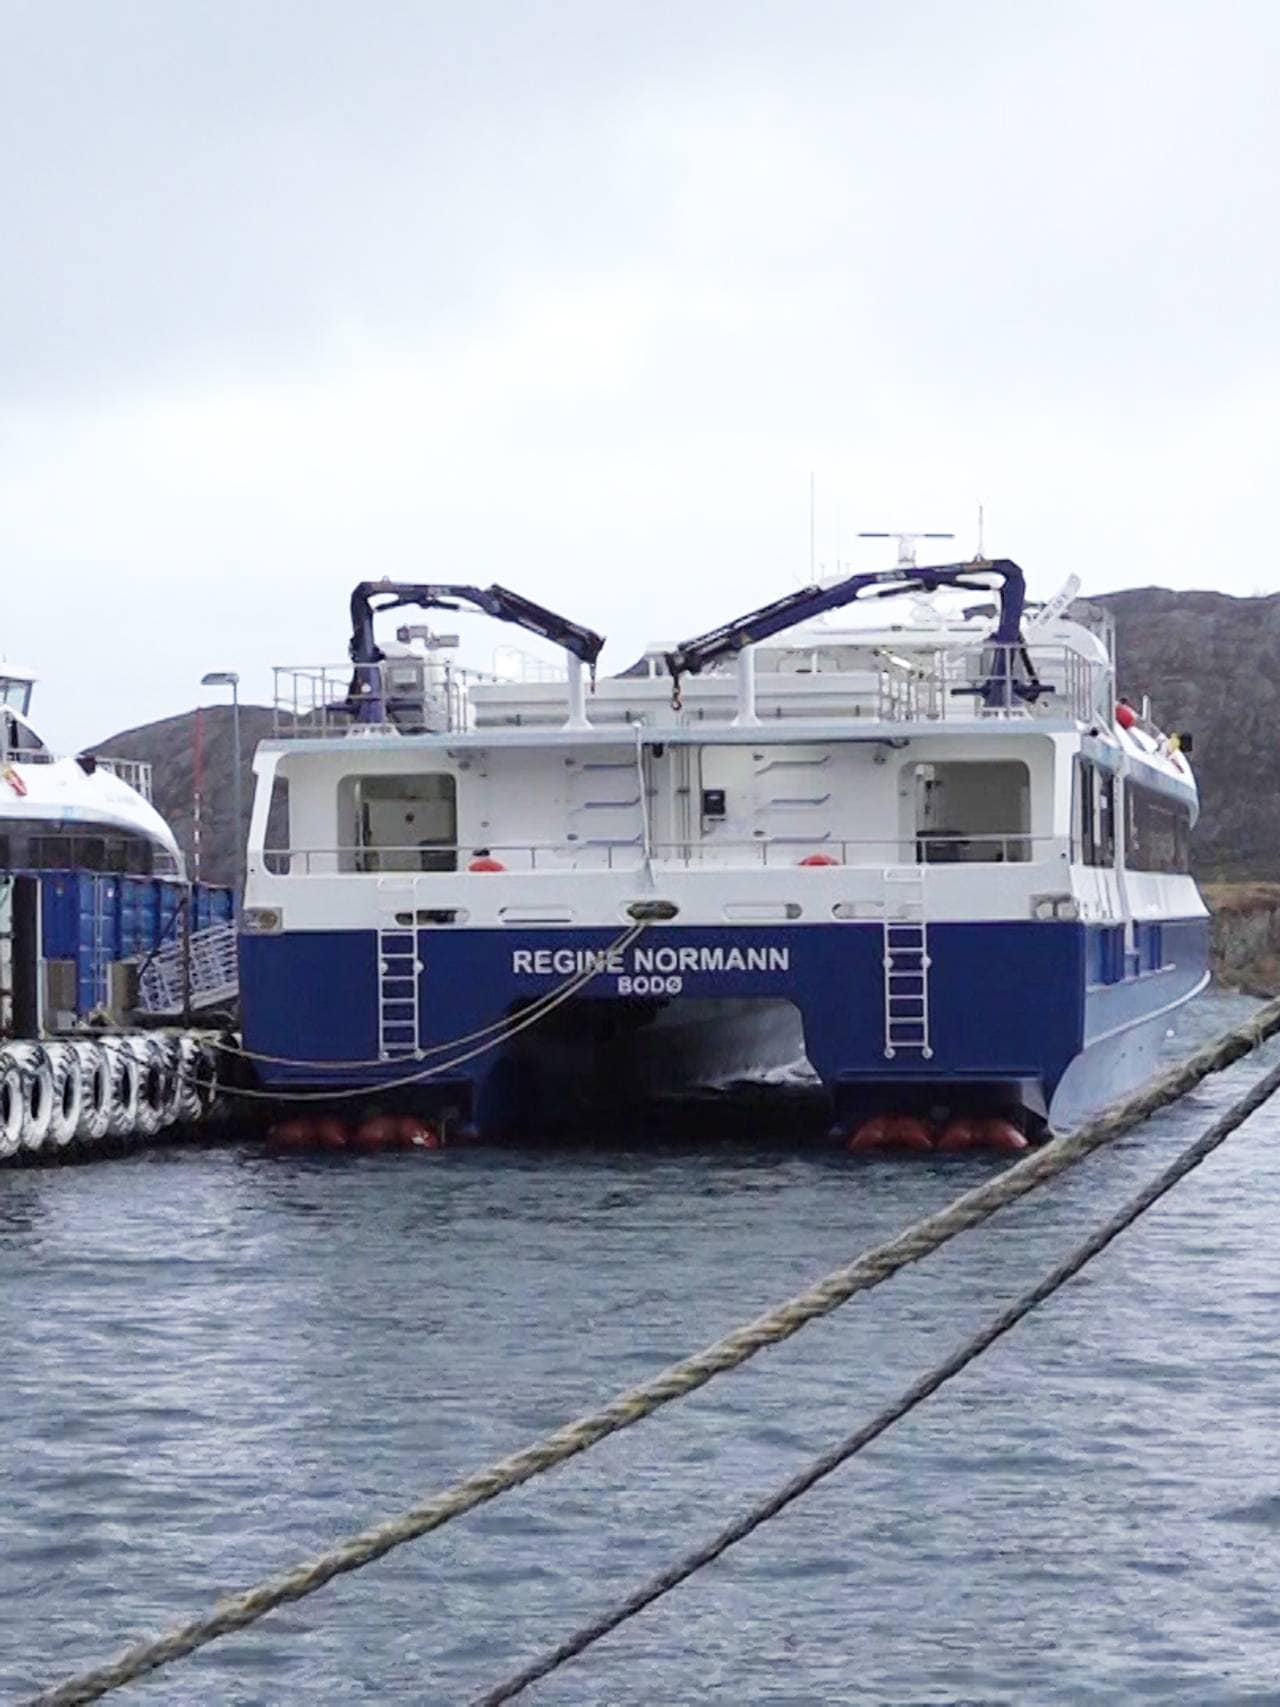 Hurtigbåtene Elsa Laula Renberg og Regine Normann ligger til kai pga teknisk svikt.